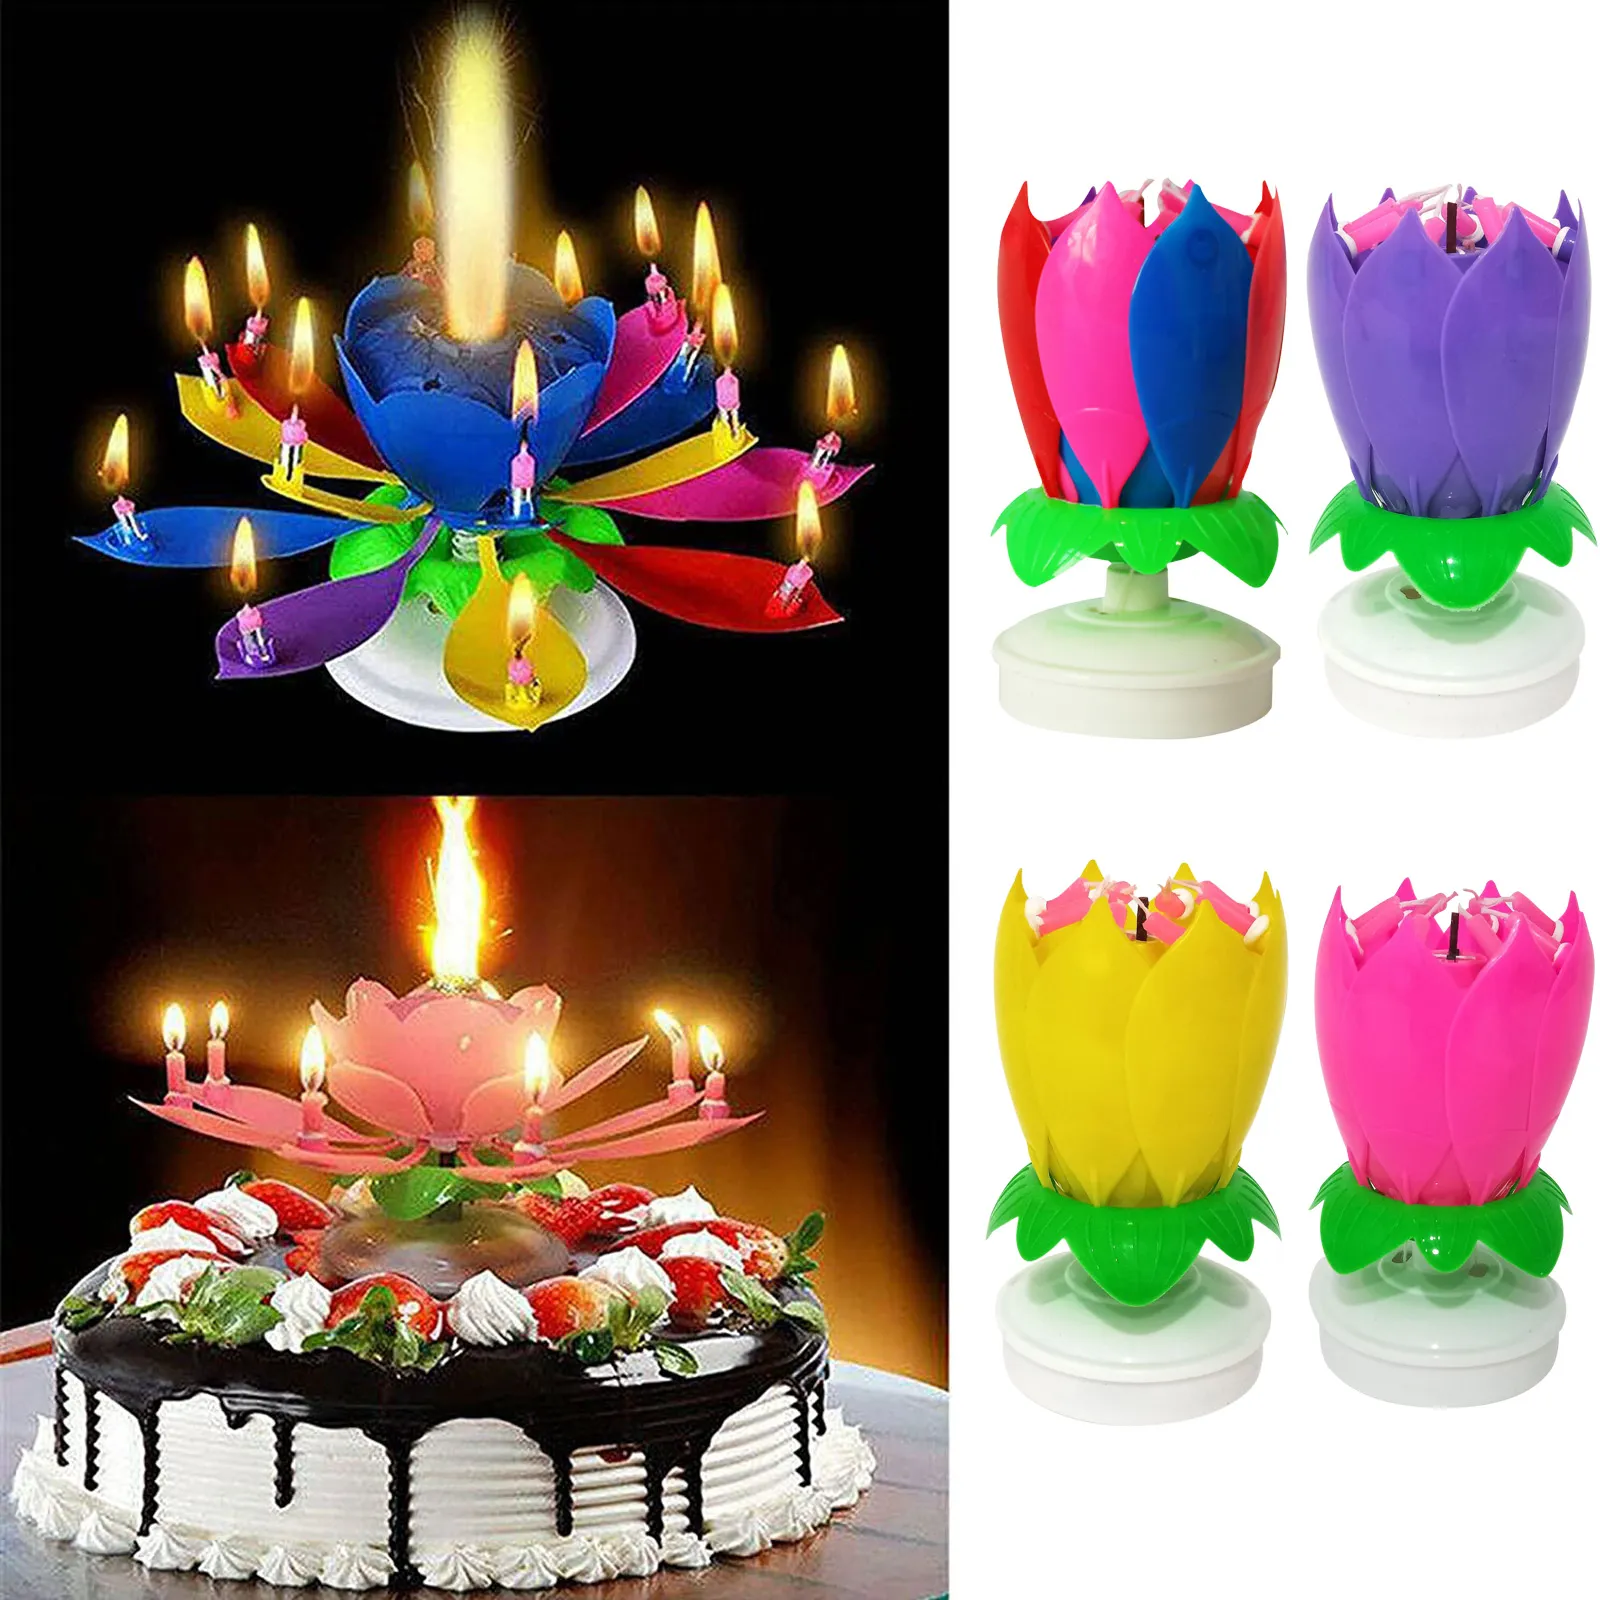 Особенности музыкальных свечей для торта